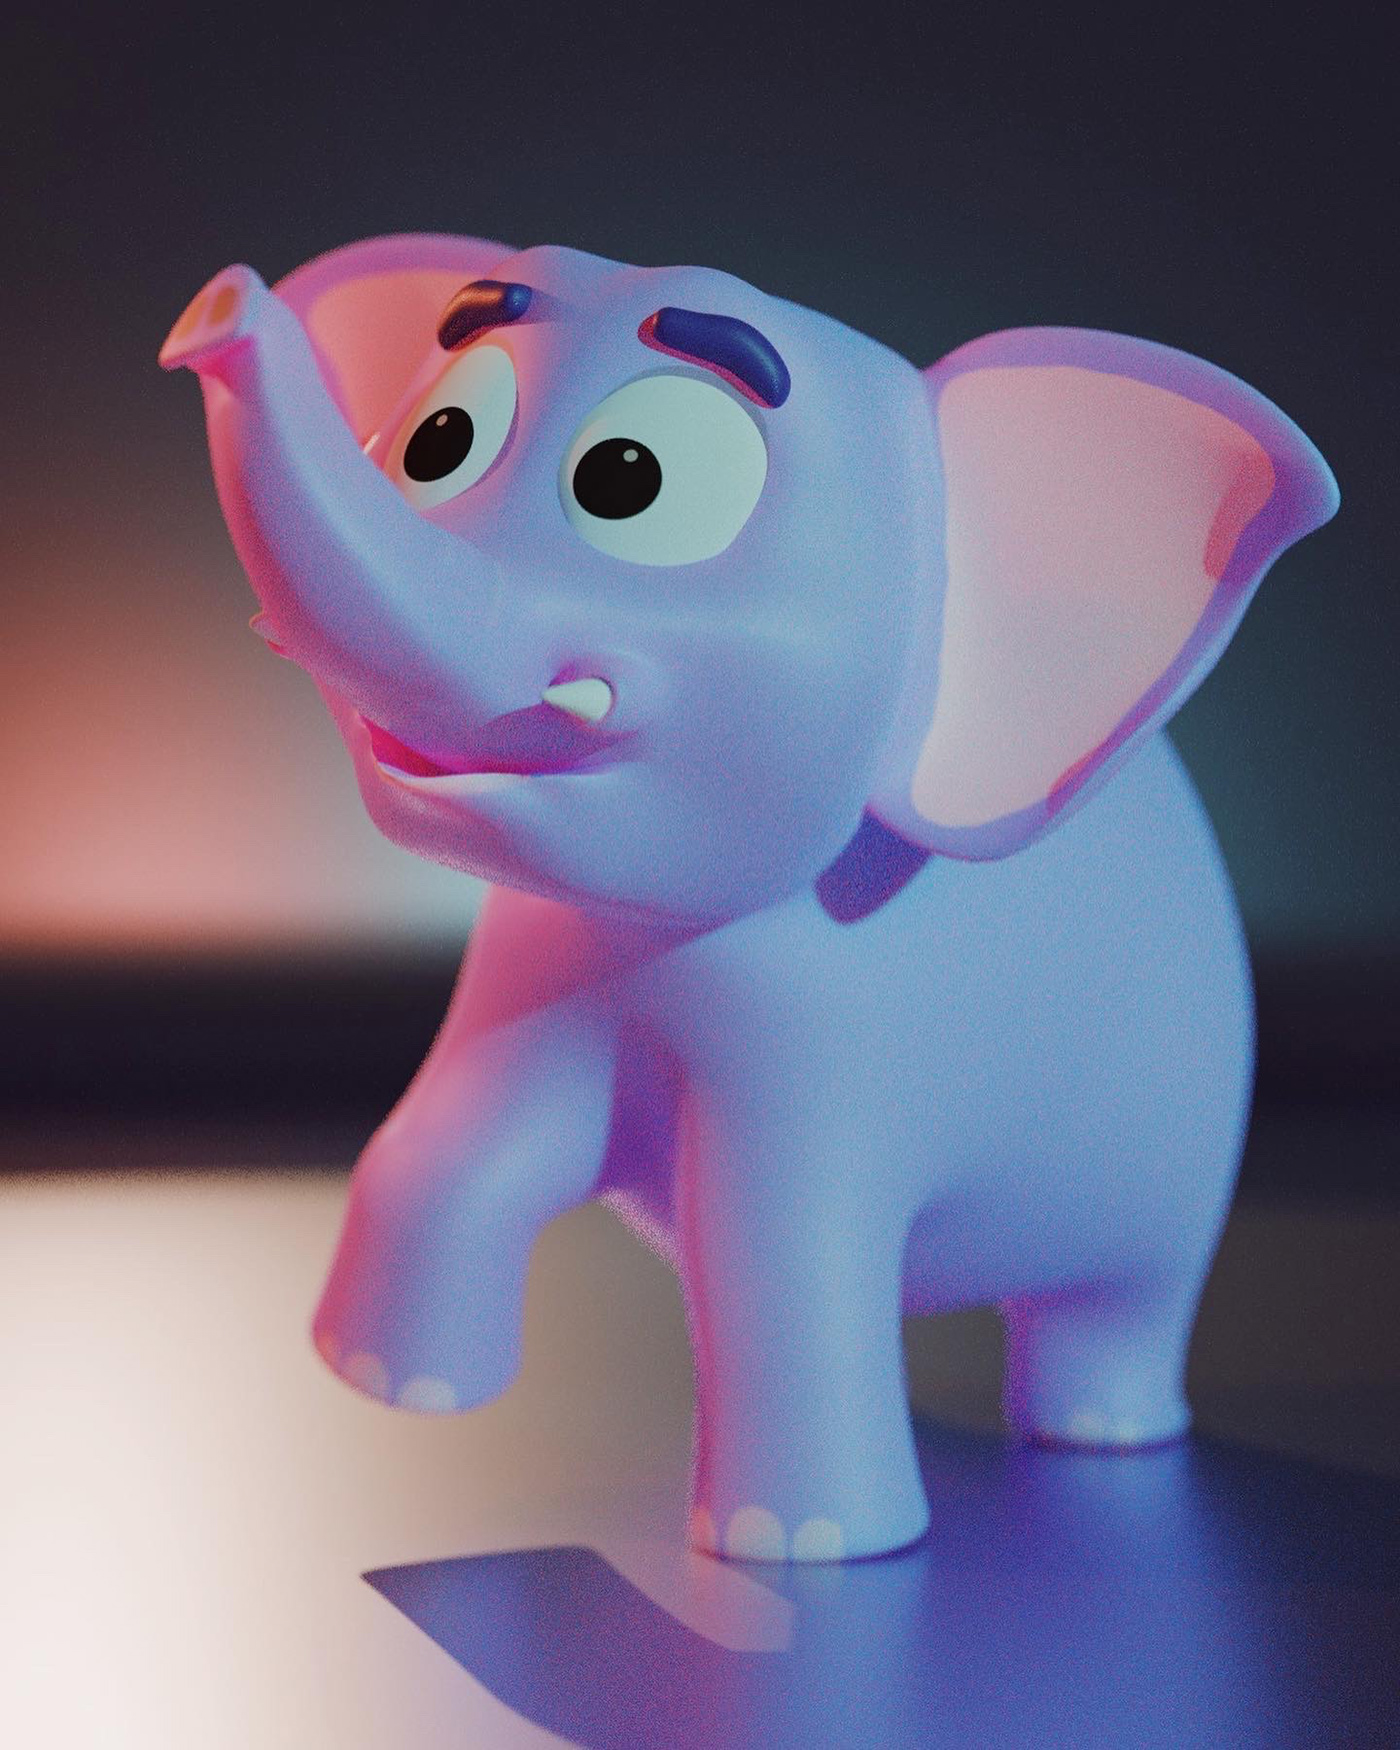 3D blender 3d cartoon Character elephant toy